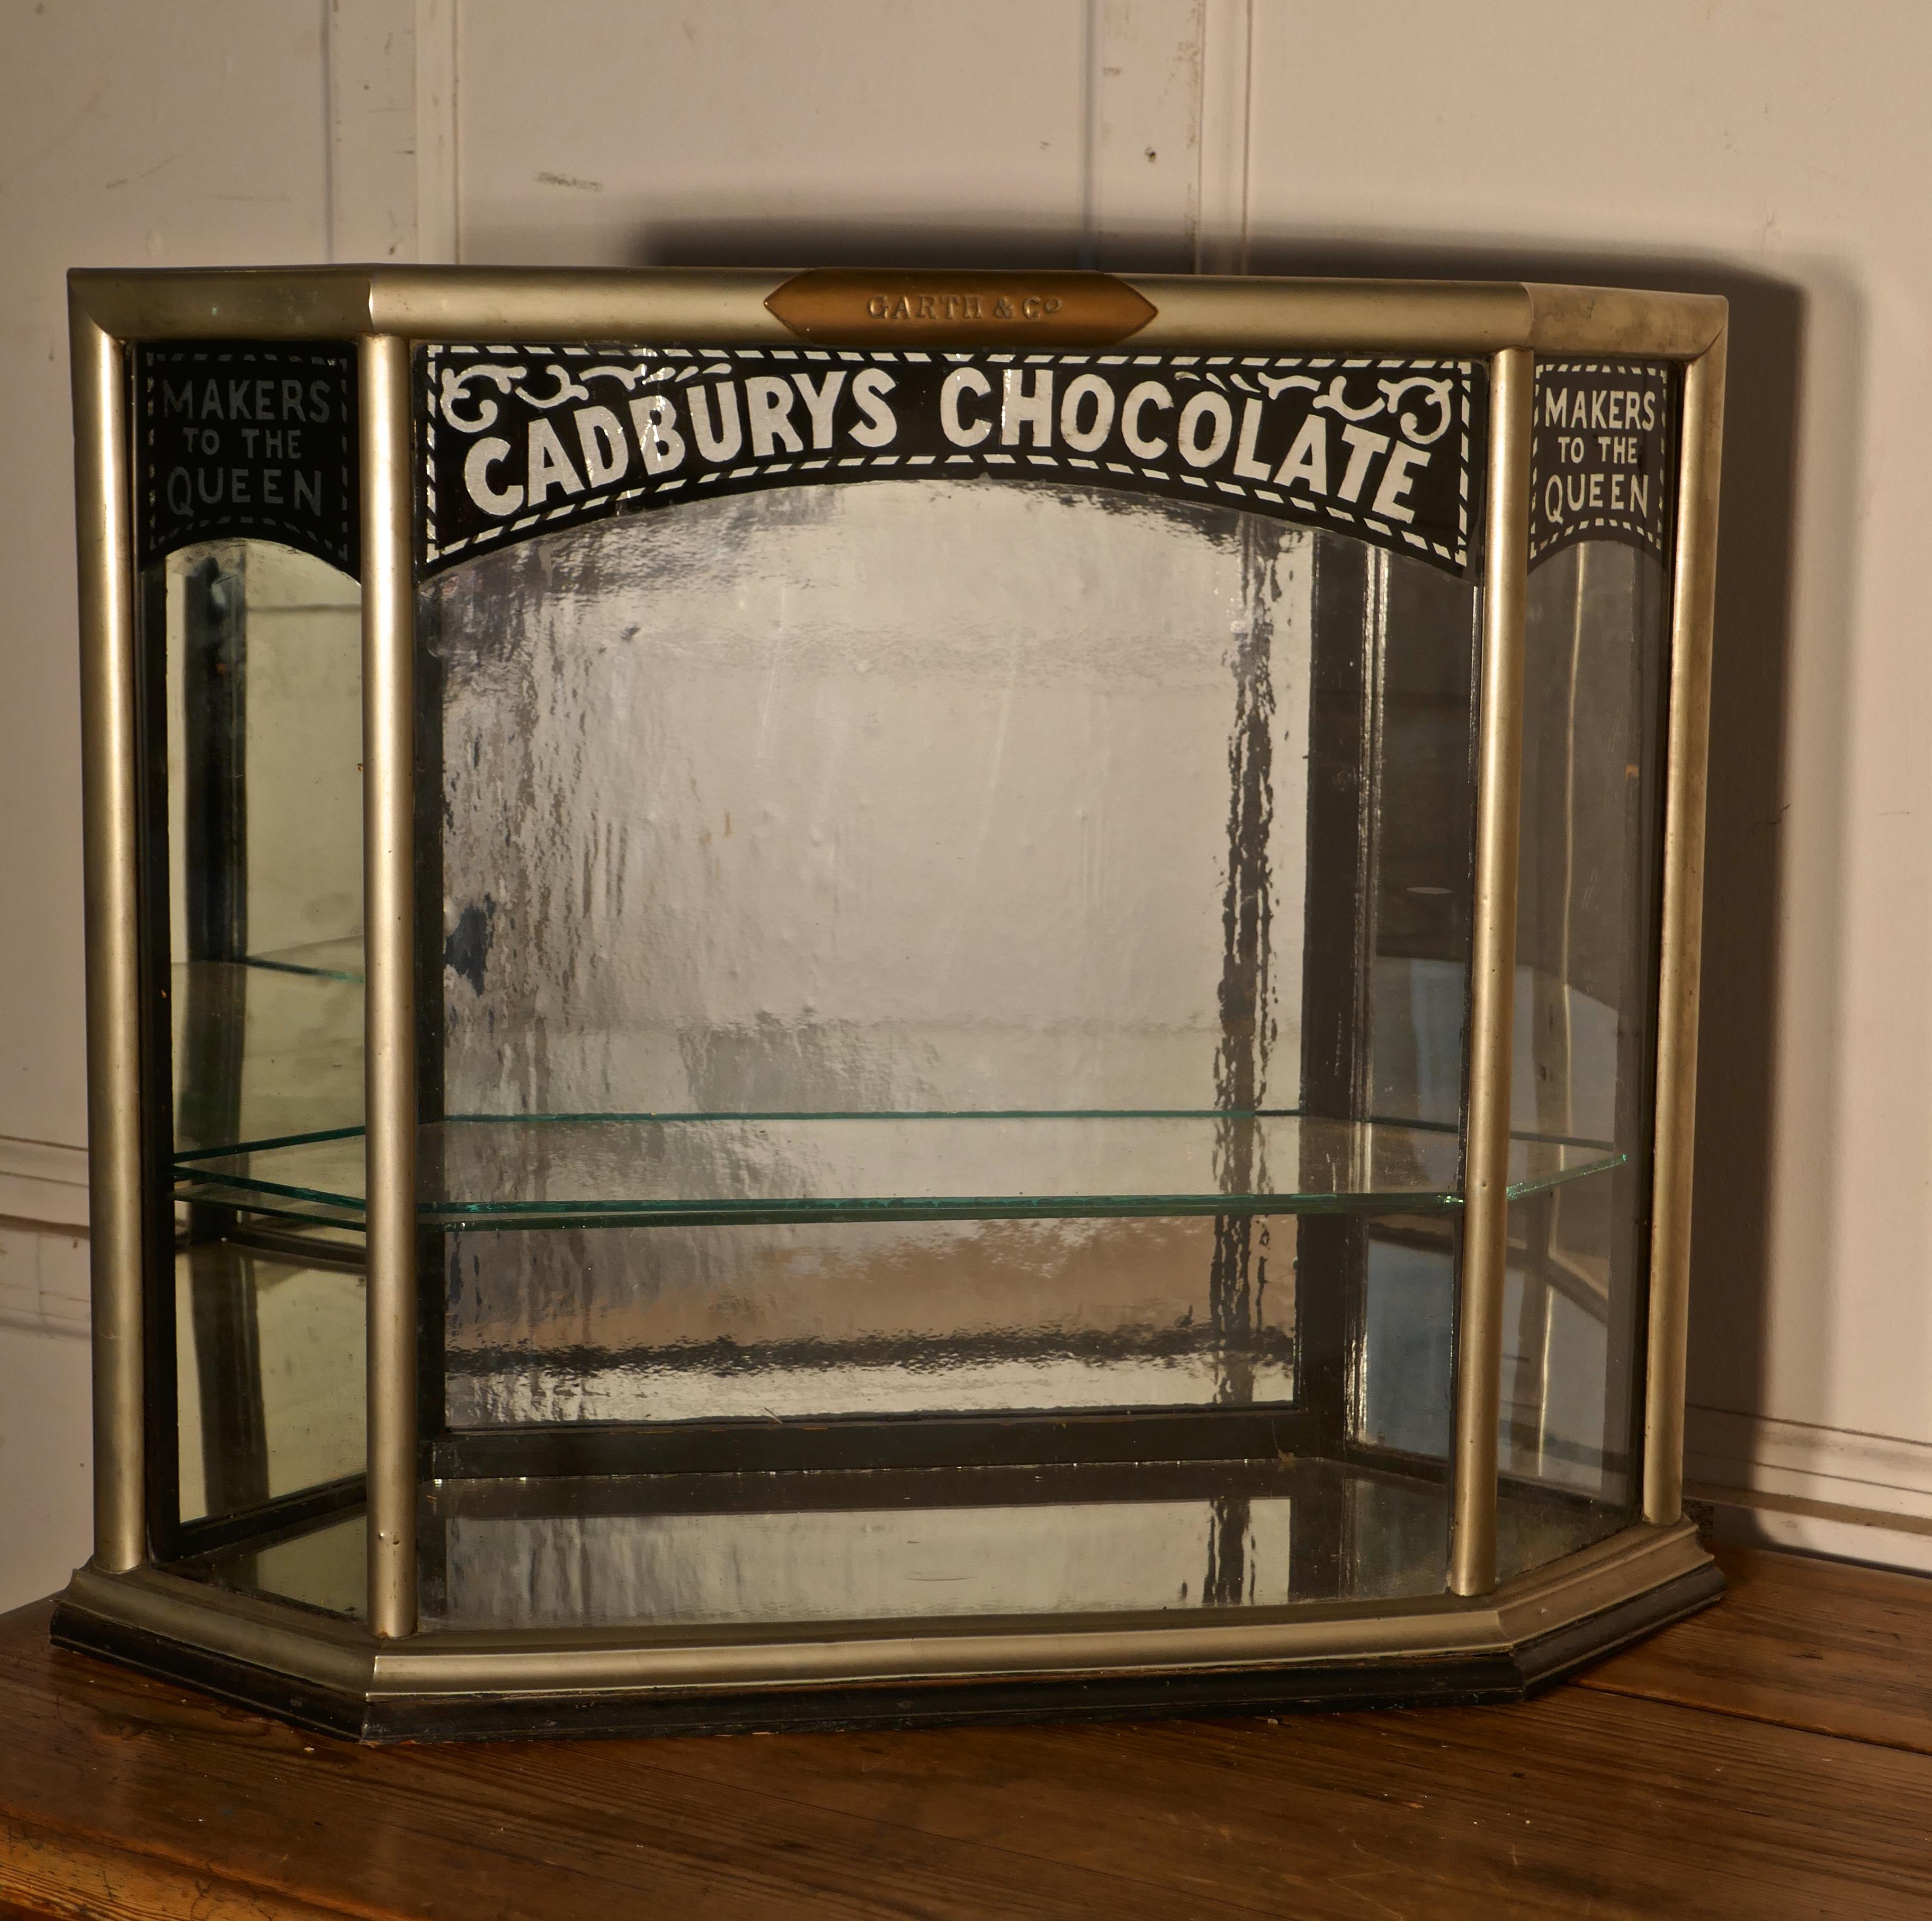 Cadbury's Art Deco Display Cabinet, Art Deco Crome

Cette petite mais charmante vitrine de magasin de bonbons Cadbury's est une pièce de comptoir. Vue d'en haut, elle a la forme d'un hexagone convexe, avec une petite porte à chaque extrémité,
Le